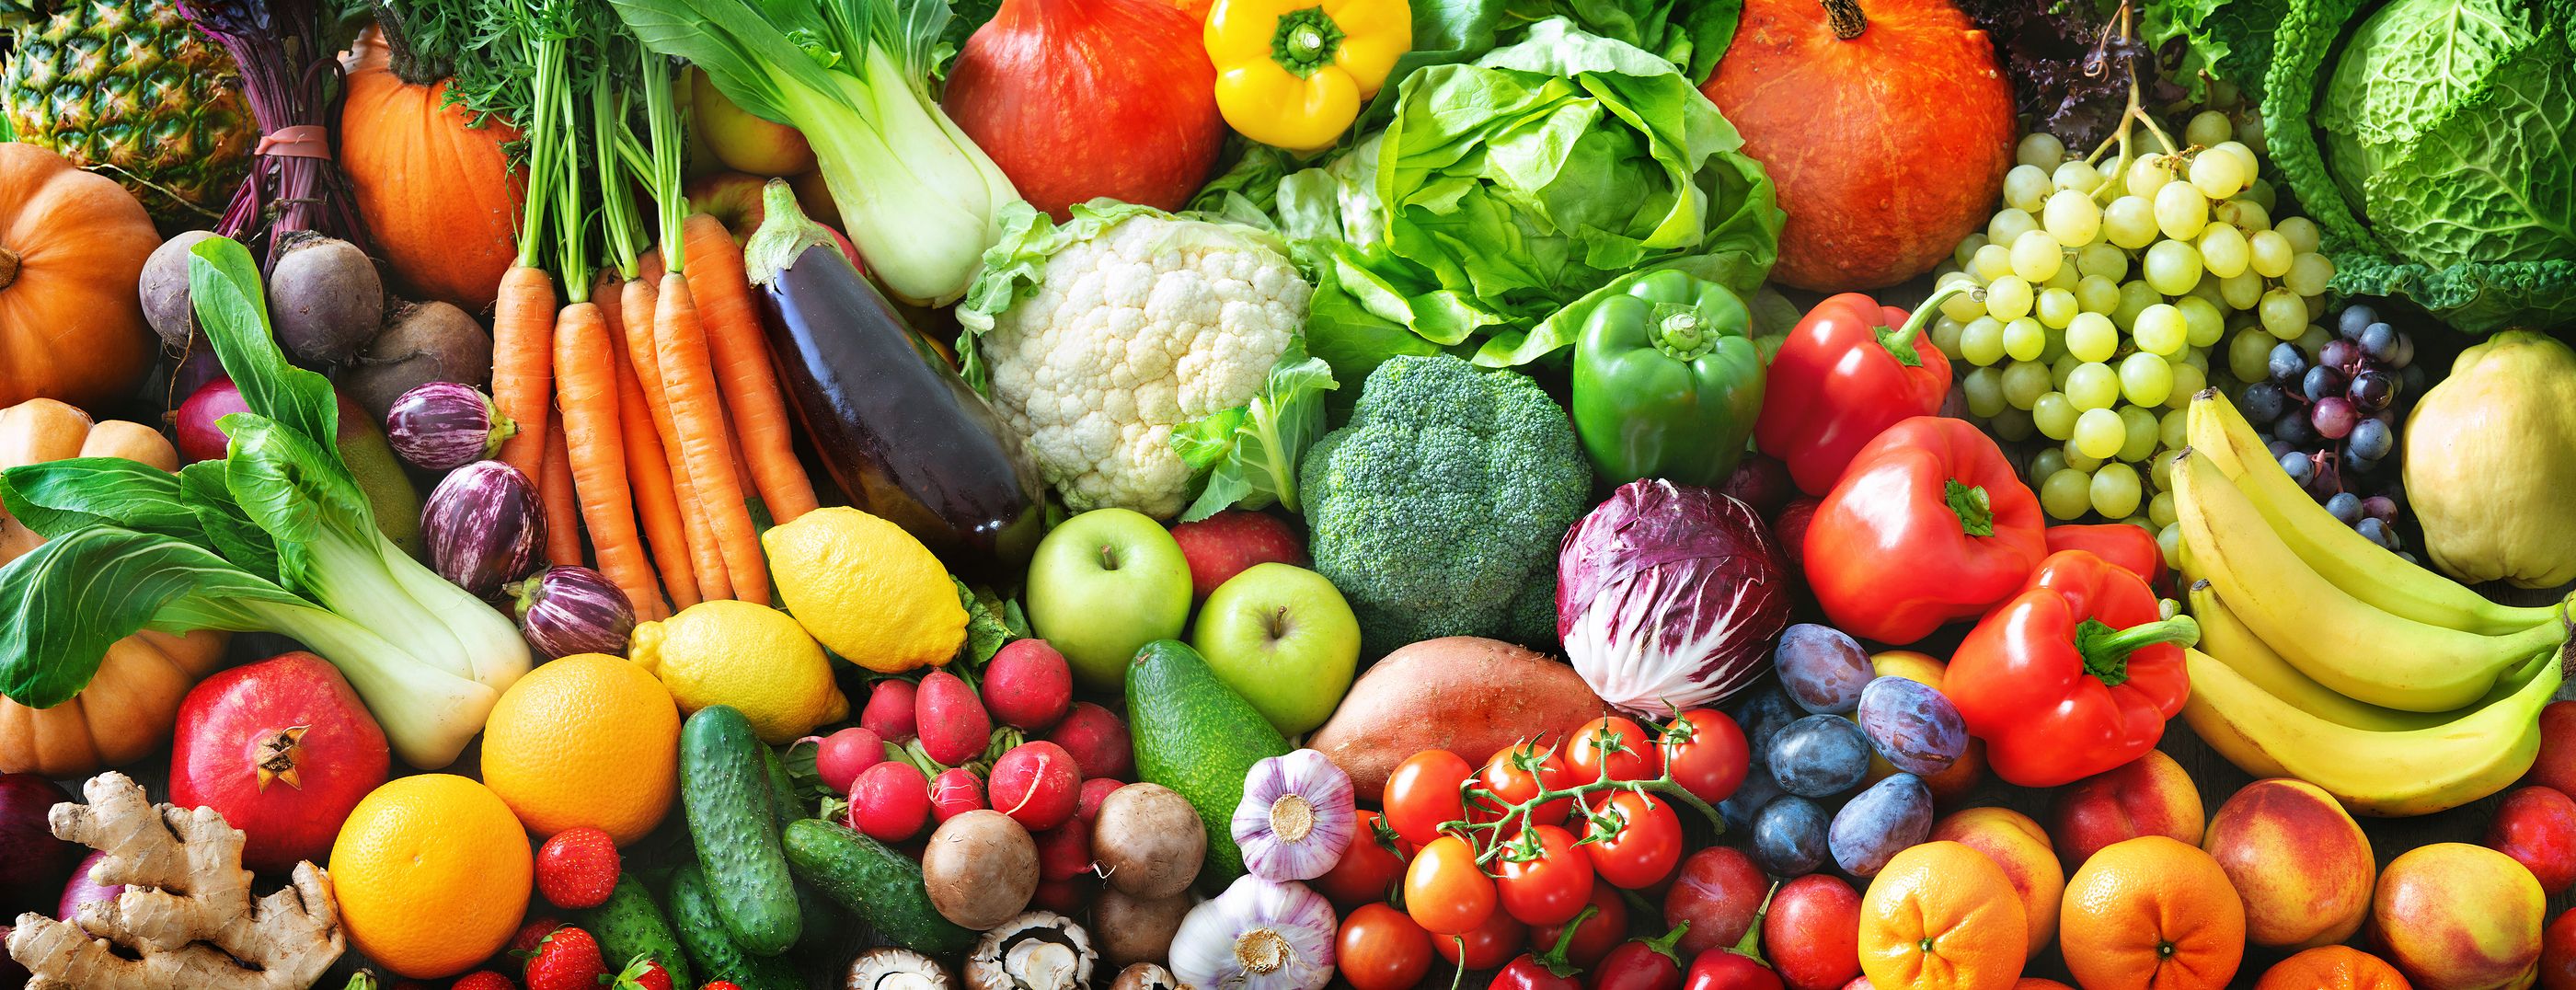 Cómo conservar correctamente los alimentos en verano y evitar los desperdicios de comida. Foto: Bigstock